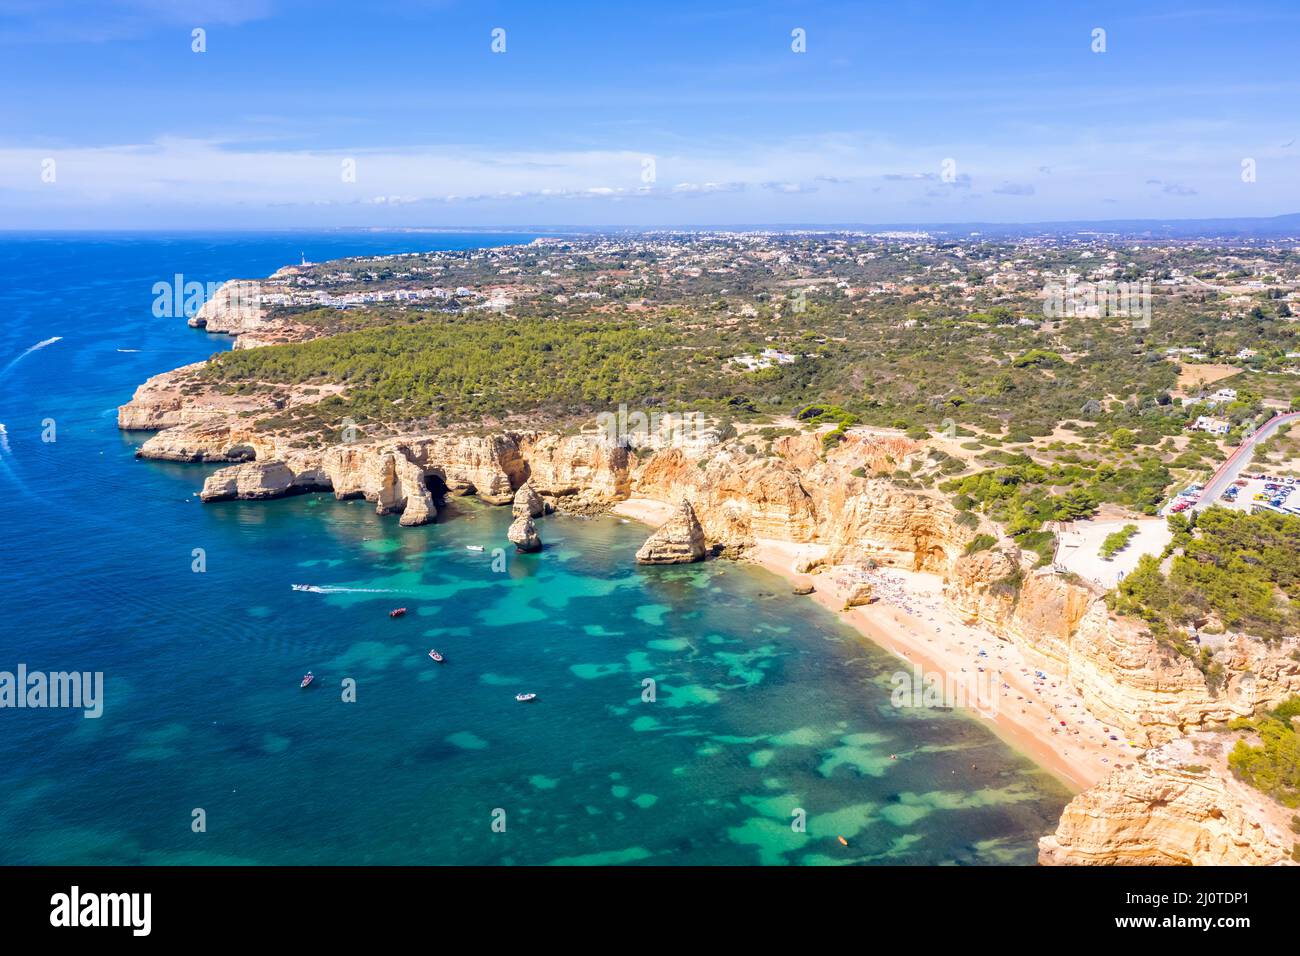 Portugal Algarve beach Praia da Marinha sea ocean drone aerial aerial view from above Stock Photo